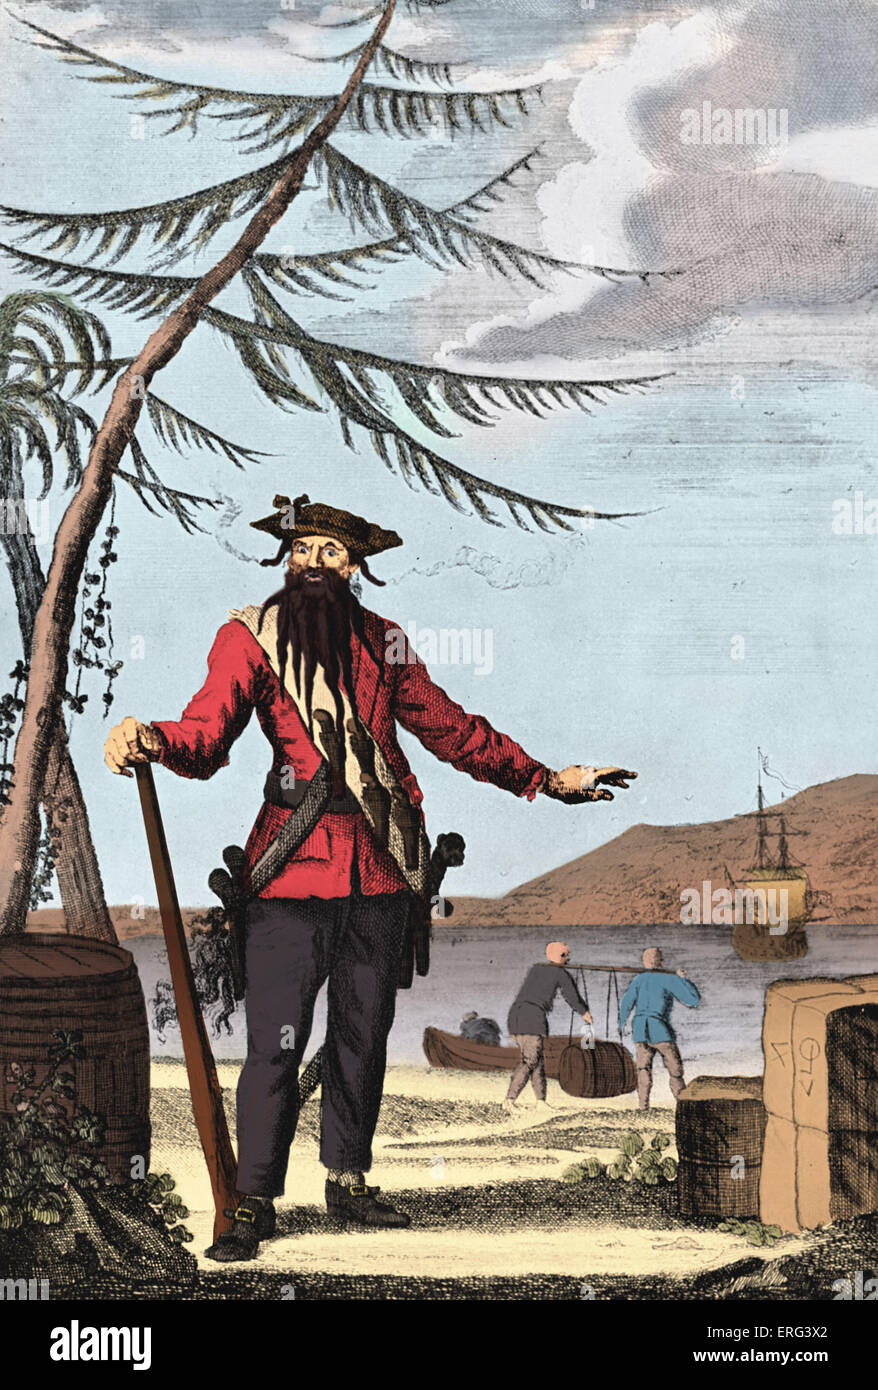 El capitán Edward Teach, (Blackbeard), grabado. Retrato de Edward Teach (paja, nacido Edward Drummond), comúnmente conocido como Foto de stock